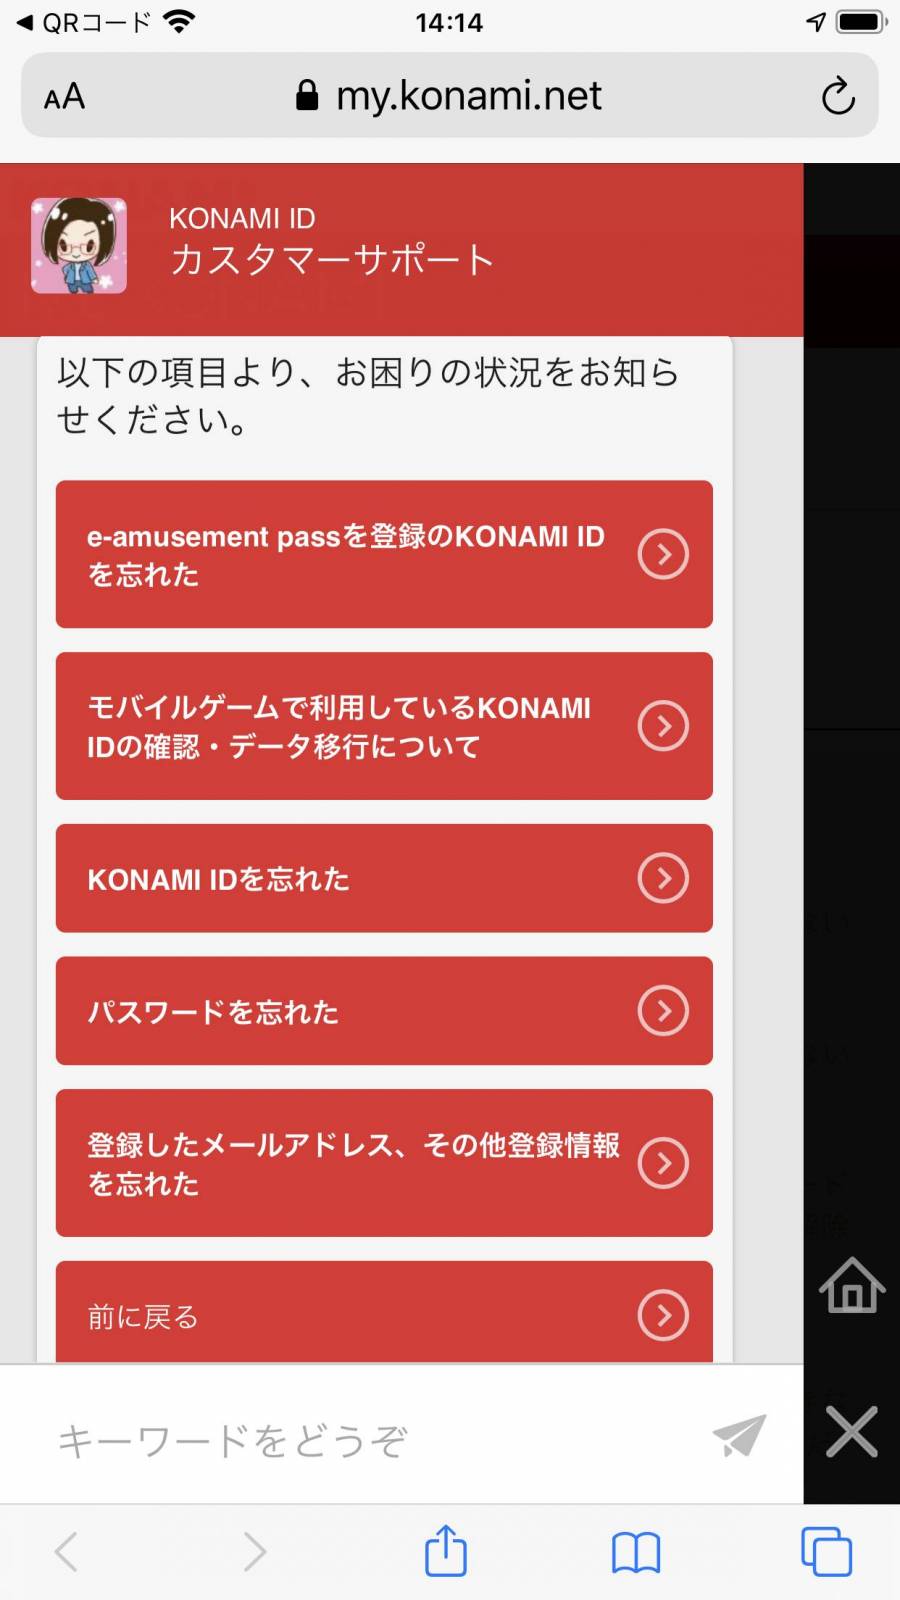 KONAMI ID カスタマーサポート チャット画面